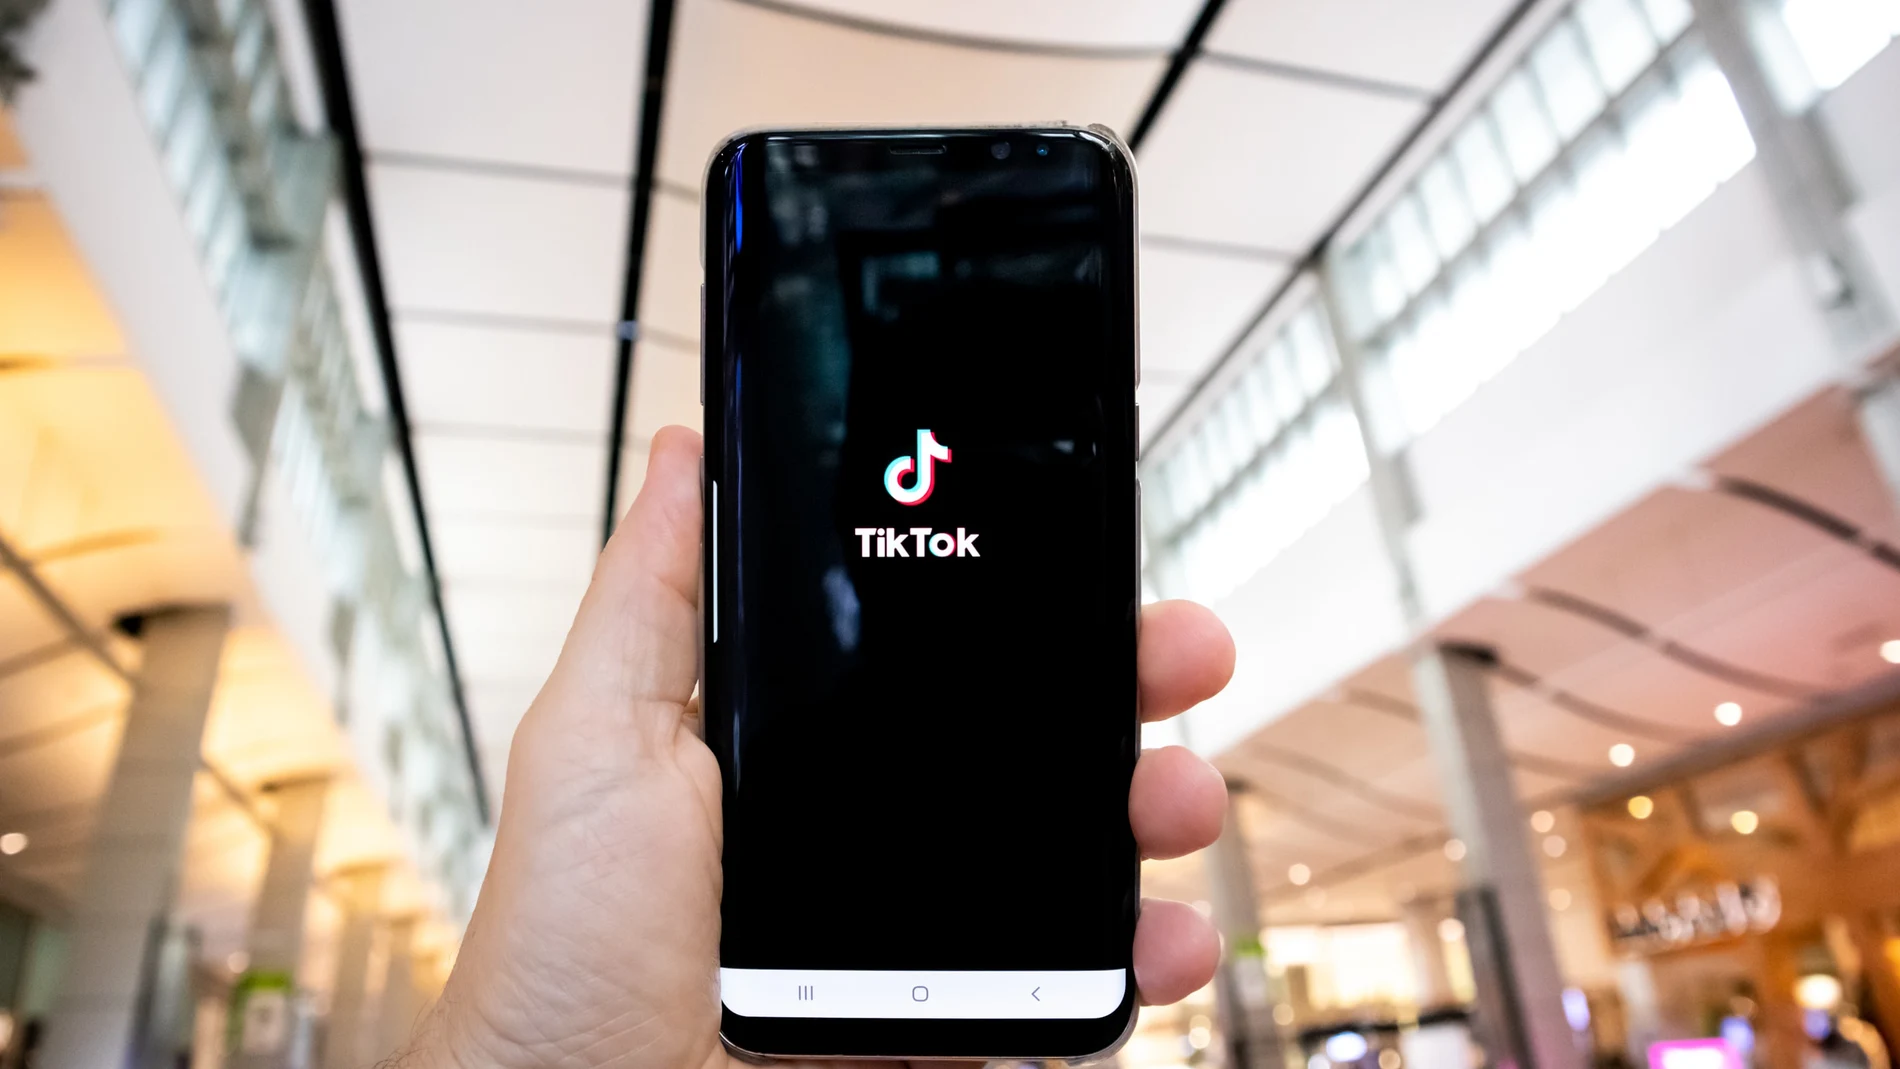 La aplicación TikTok abierta en un teléfono móvil